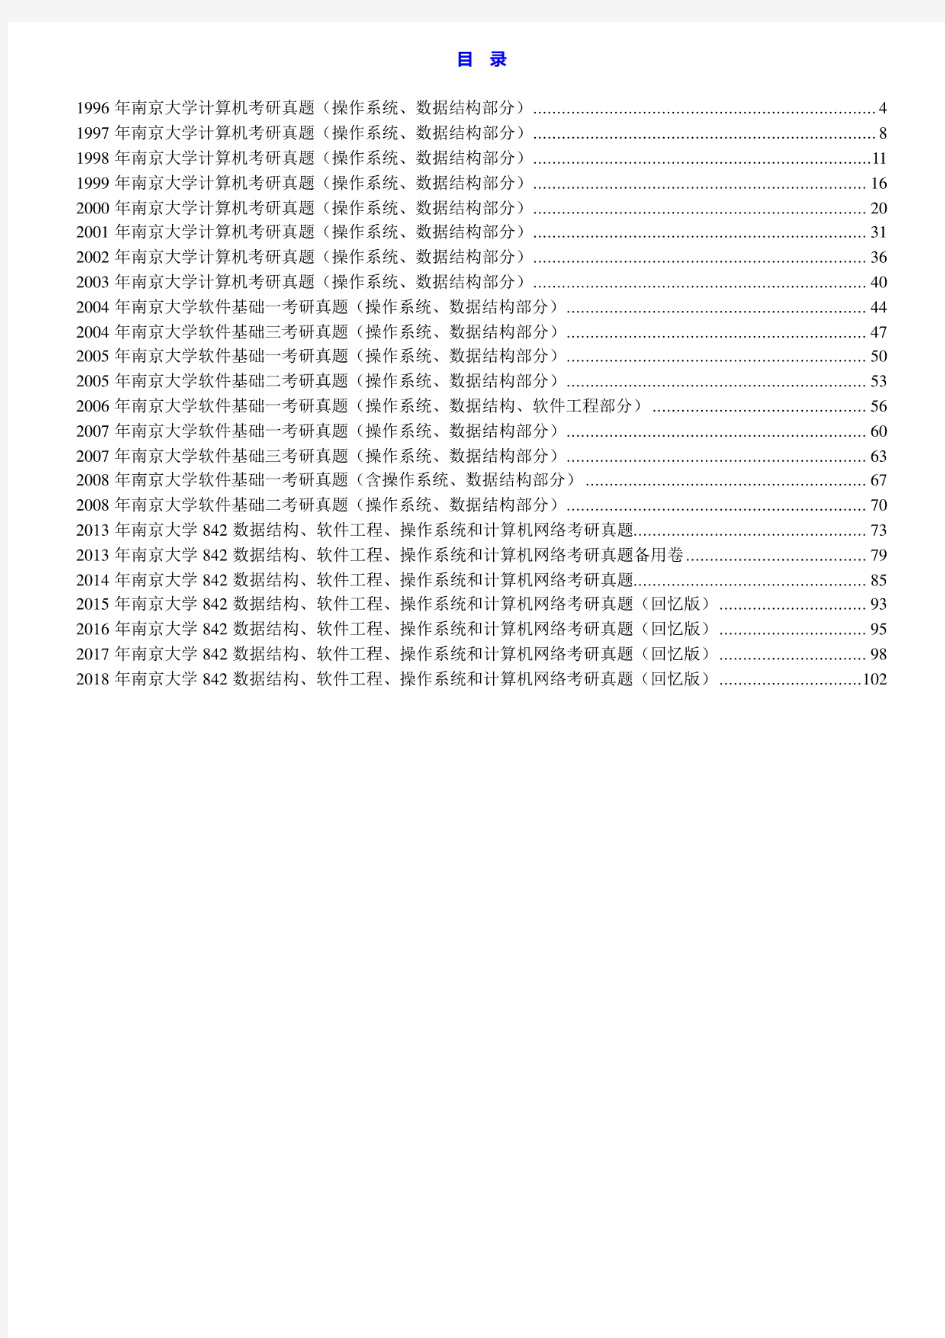 南京大学《842数据结构、软件工程、操作系统和计算机网络》历年考研真题汇编